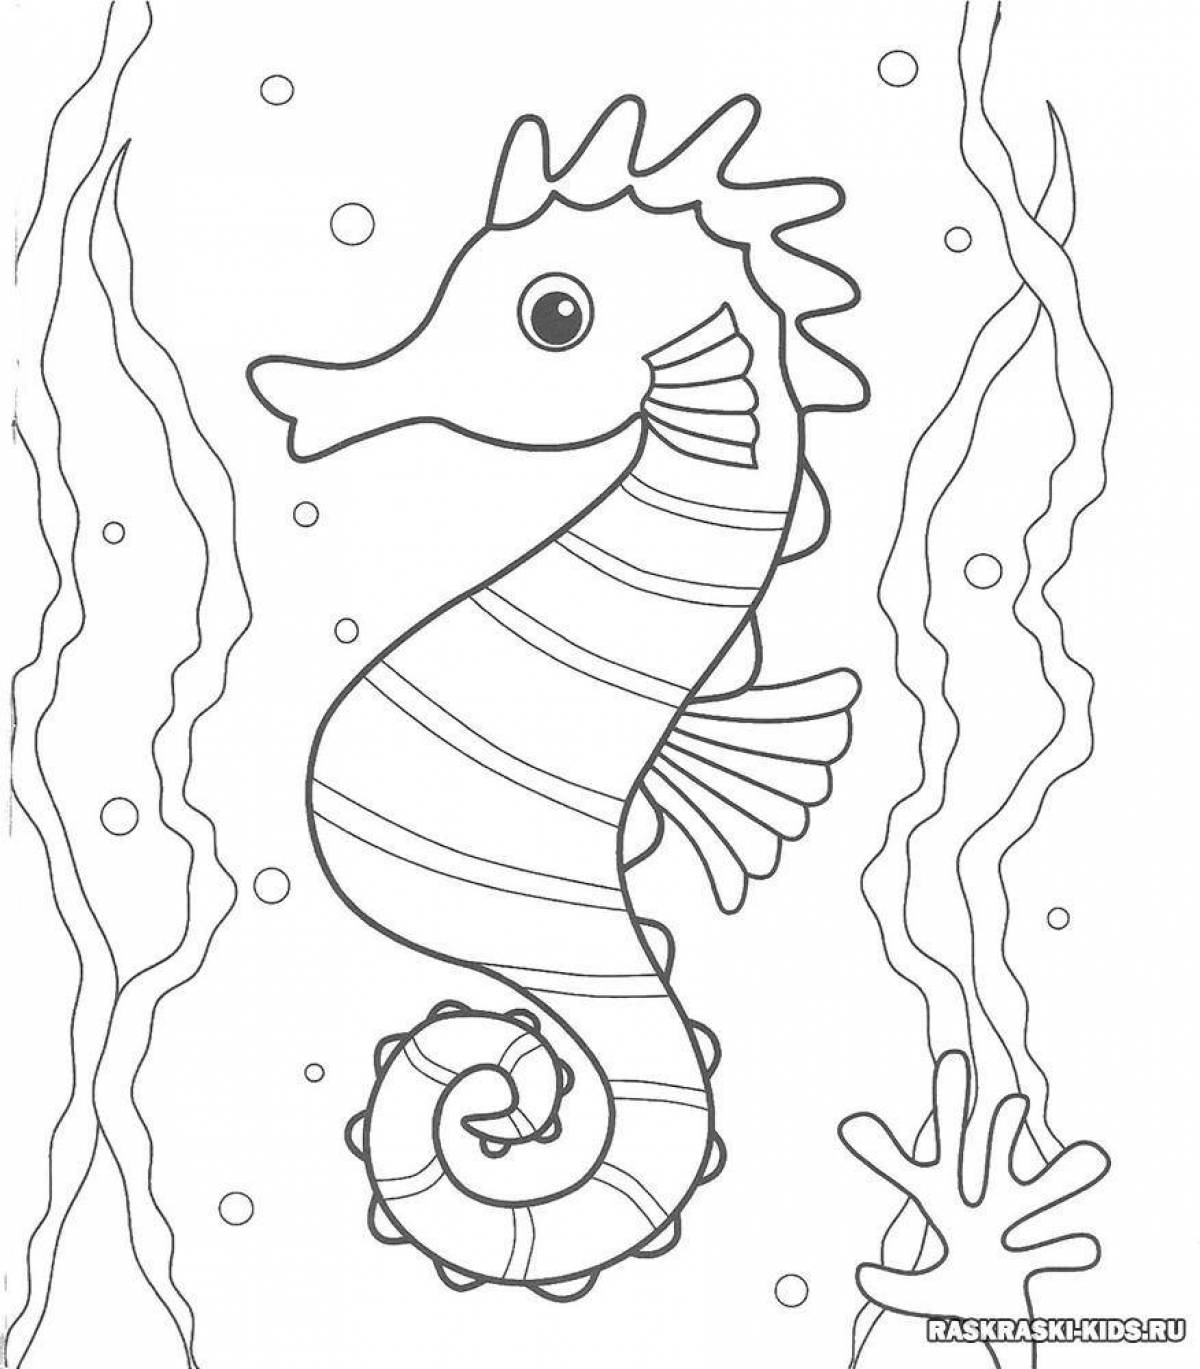 Веселая раскраска морской конек для детей